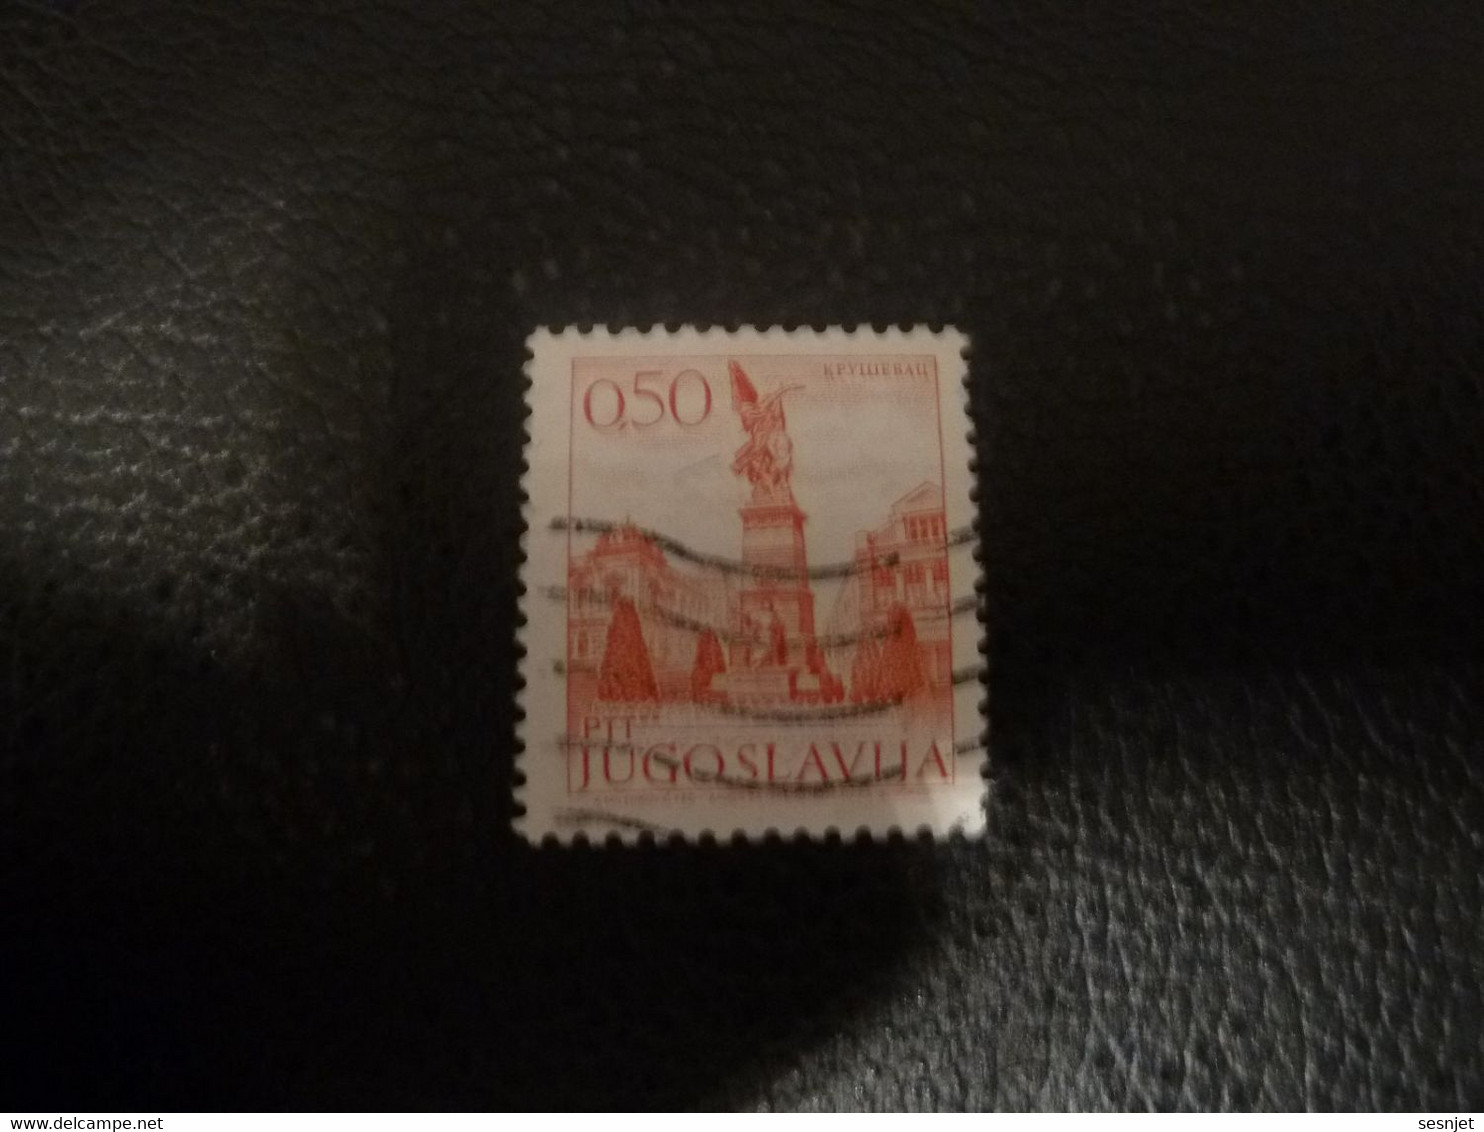 Ptt - Jugoslavija - KpyIIIebaII - Val 0.50 - Rouge - Oblitéré - - Used Stamps